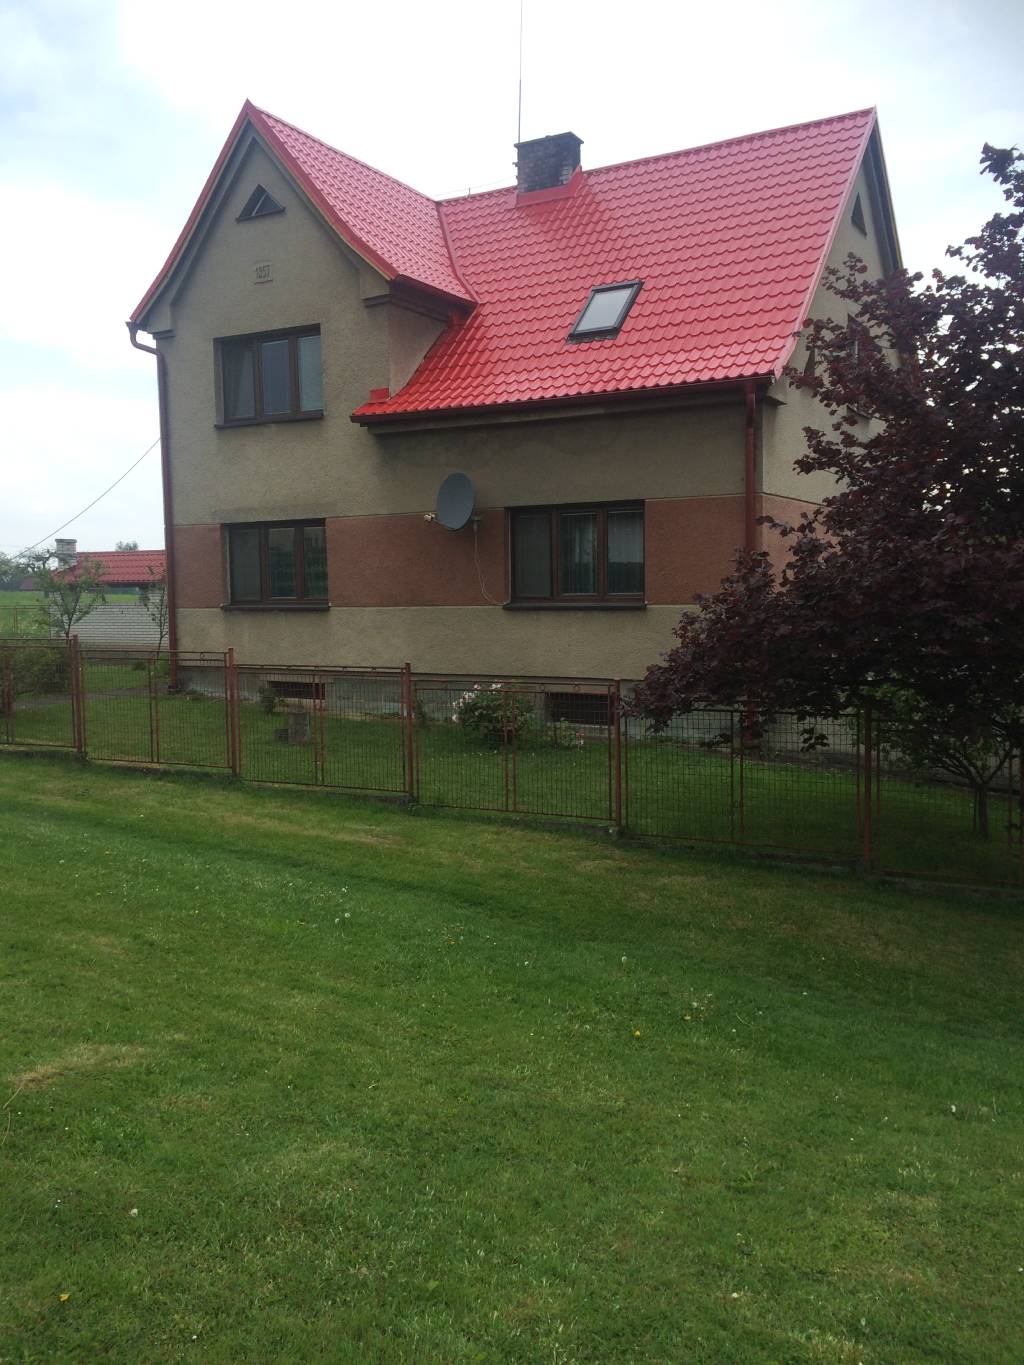 Rekonstrukce střechy, Rodinný dům v Opavě | RoofMont.cz